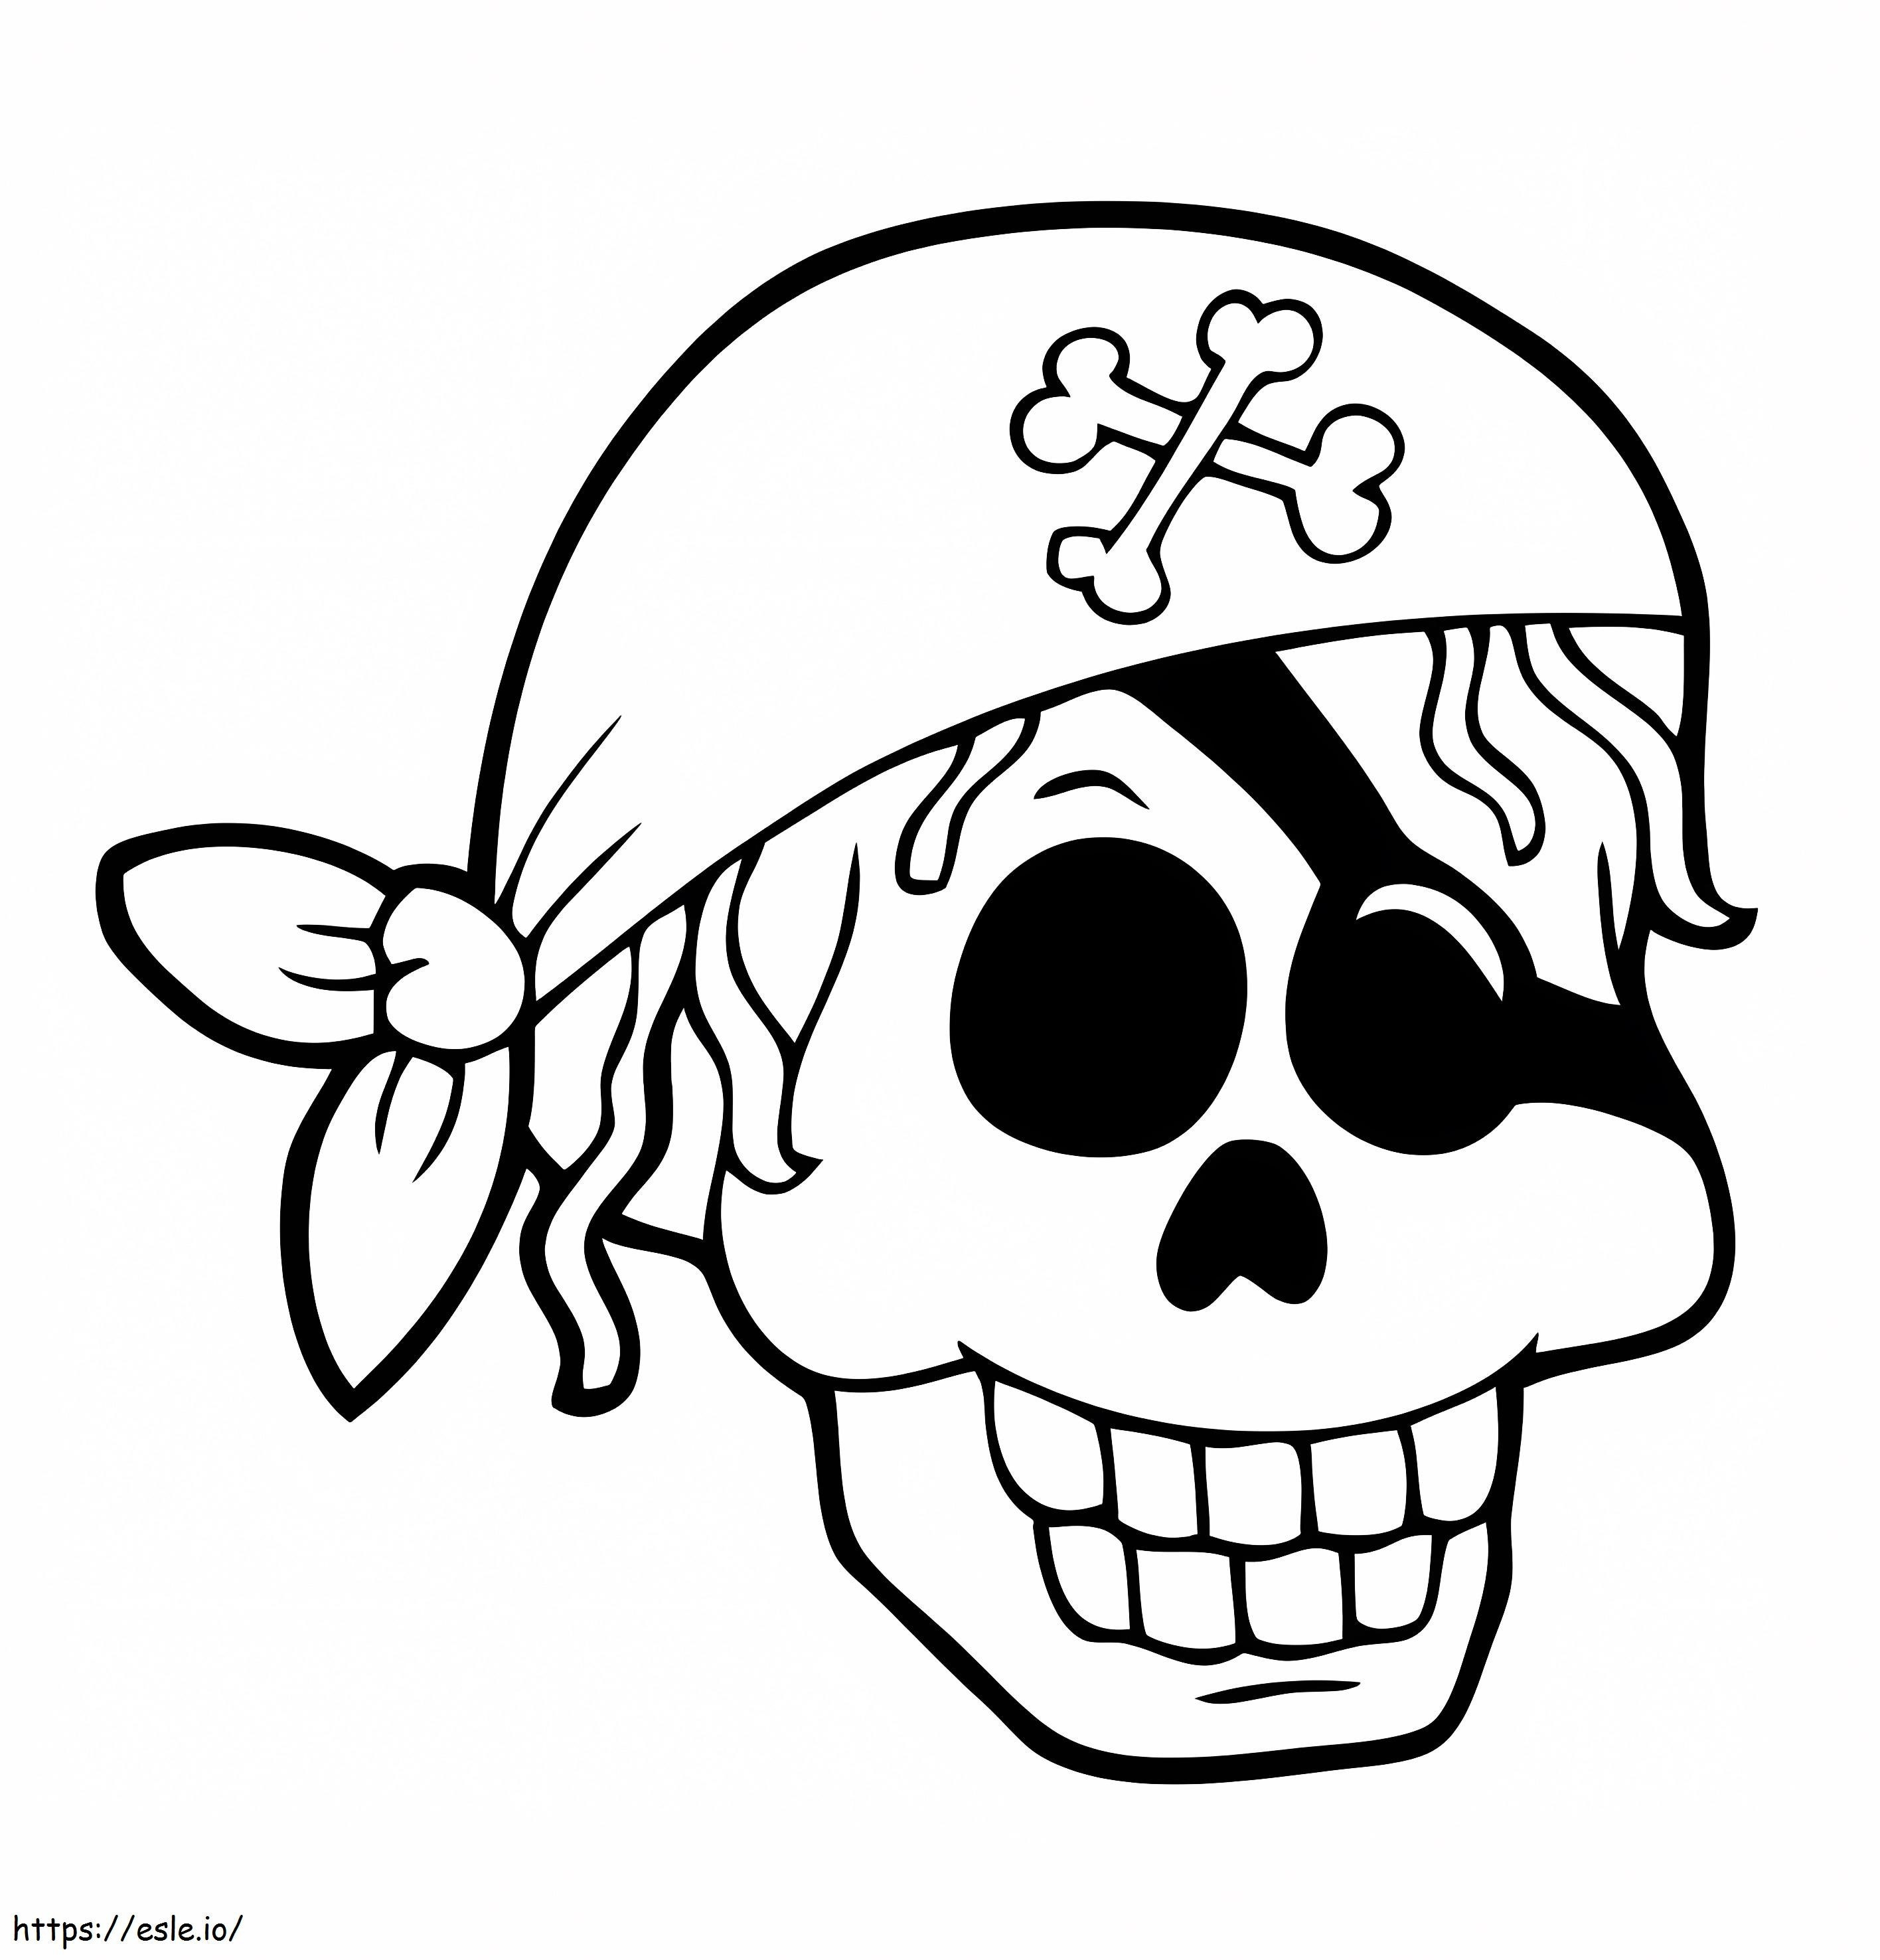 Gru pirata da colorare